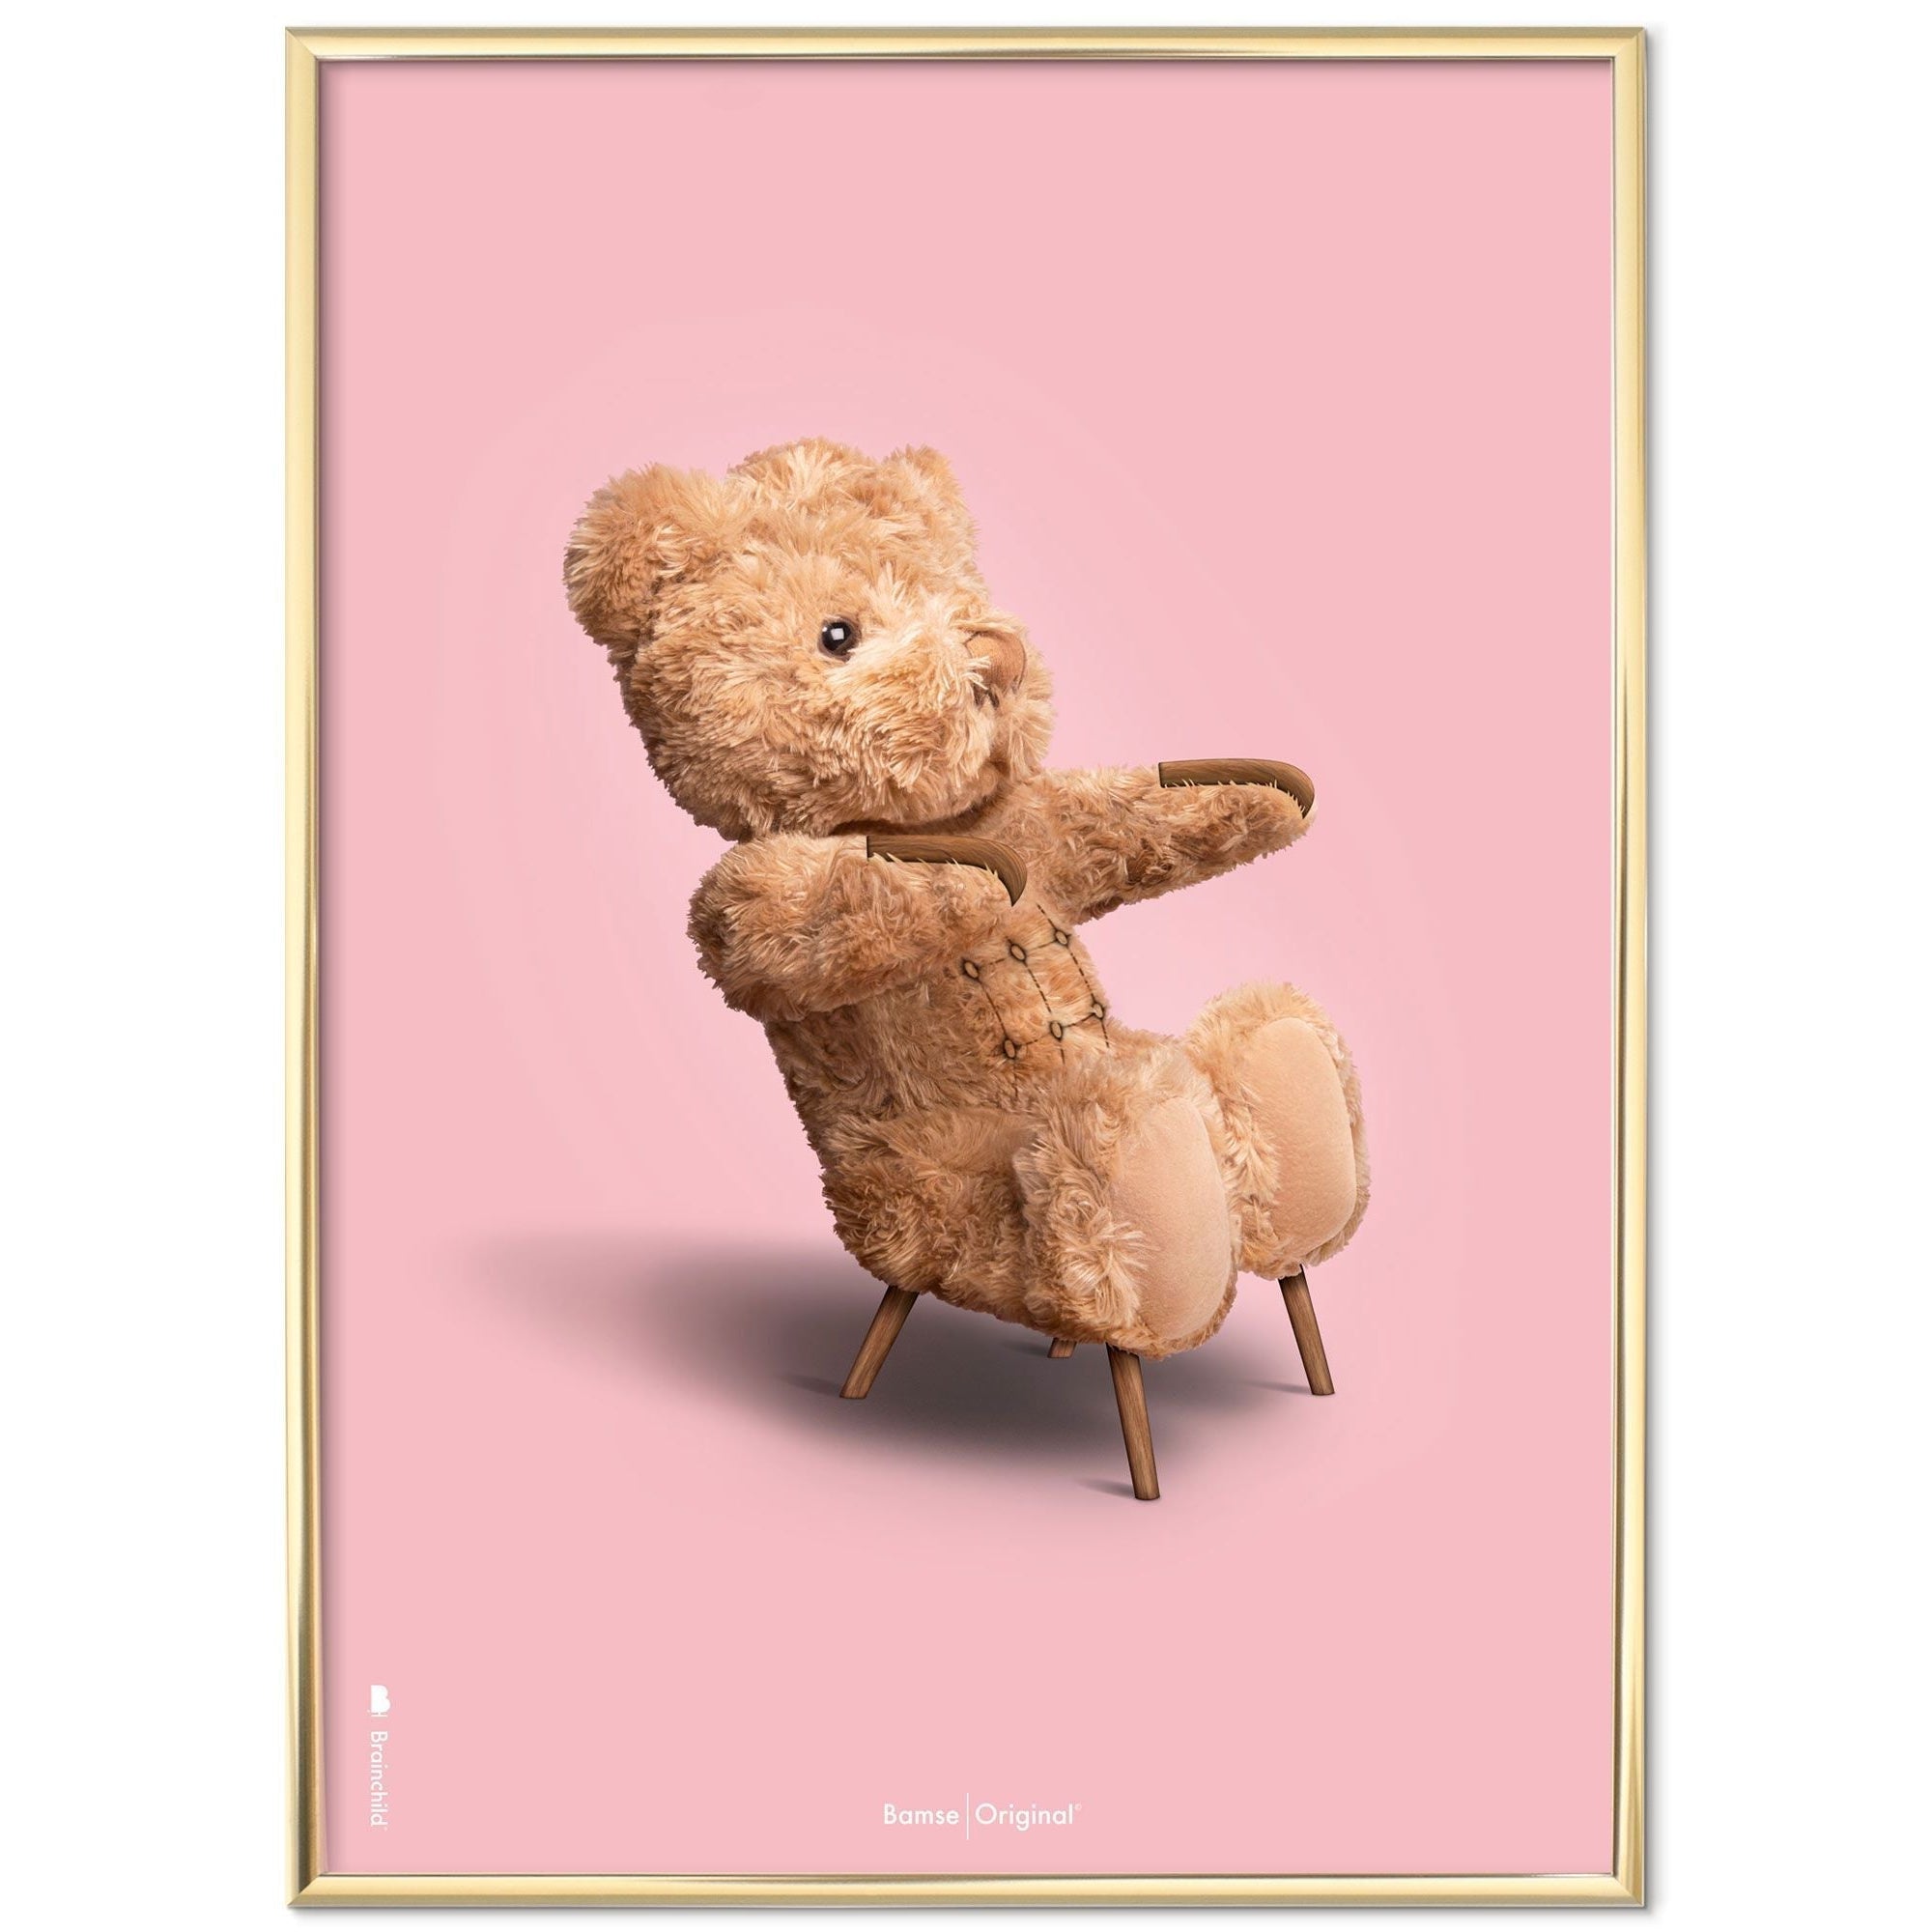 Brainchild Teddy Bear Classic plakát mosazného barevného rámu A5, růžové pozadí